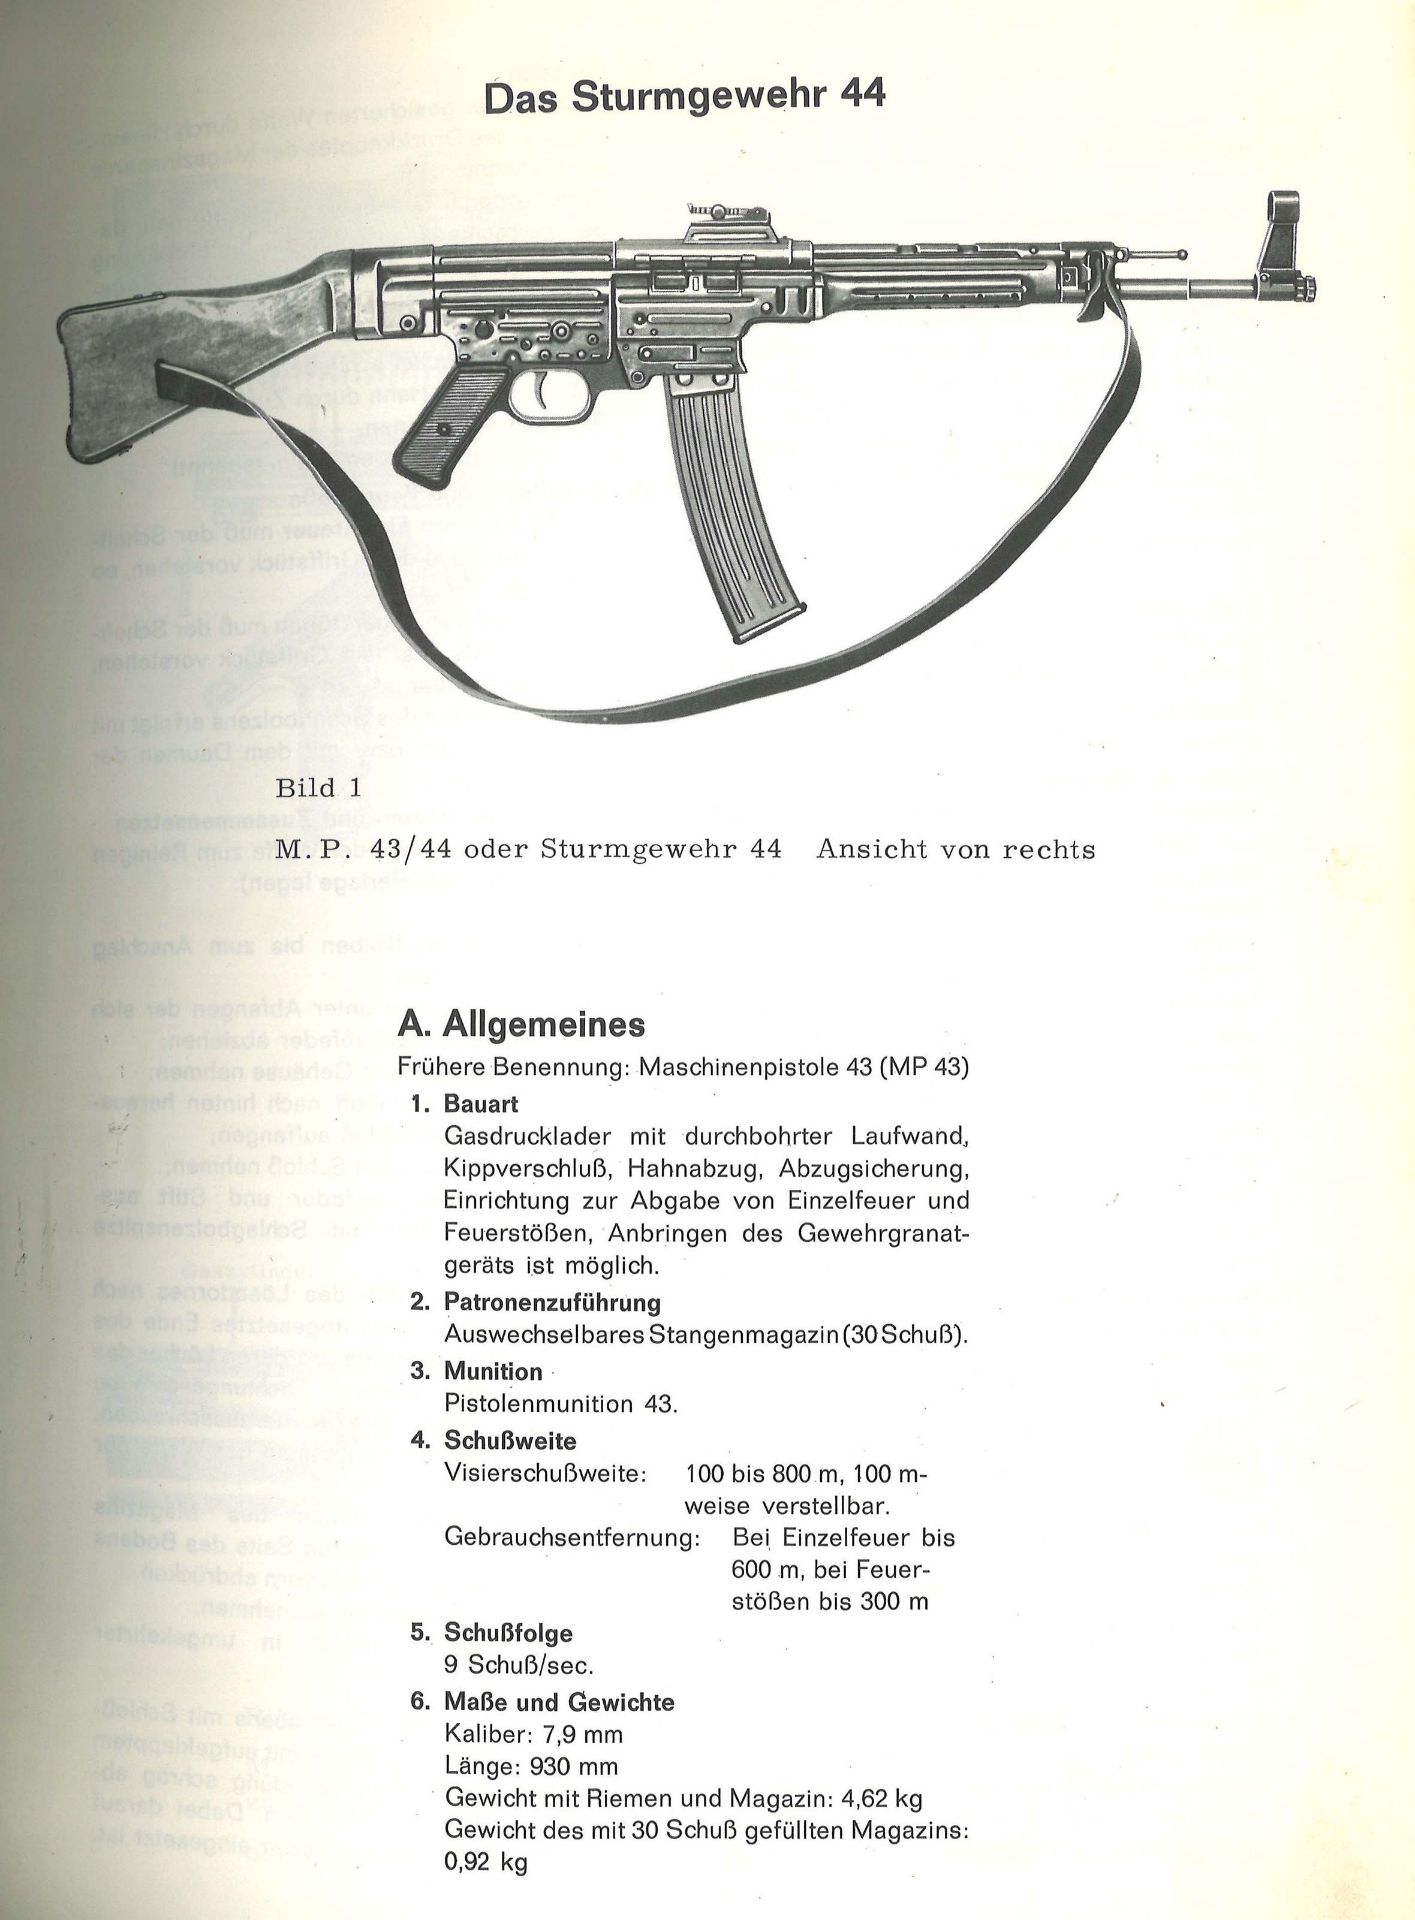 Waffengeschichte Folge: W 121 "Das deutsche Sturmgewehr 44 und seine Entwichklung". Copyright 1969 - Image 2 of 3